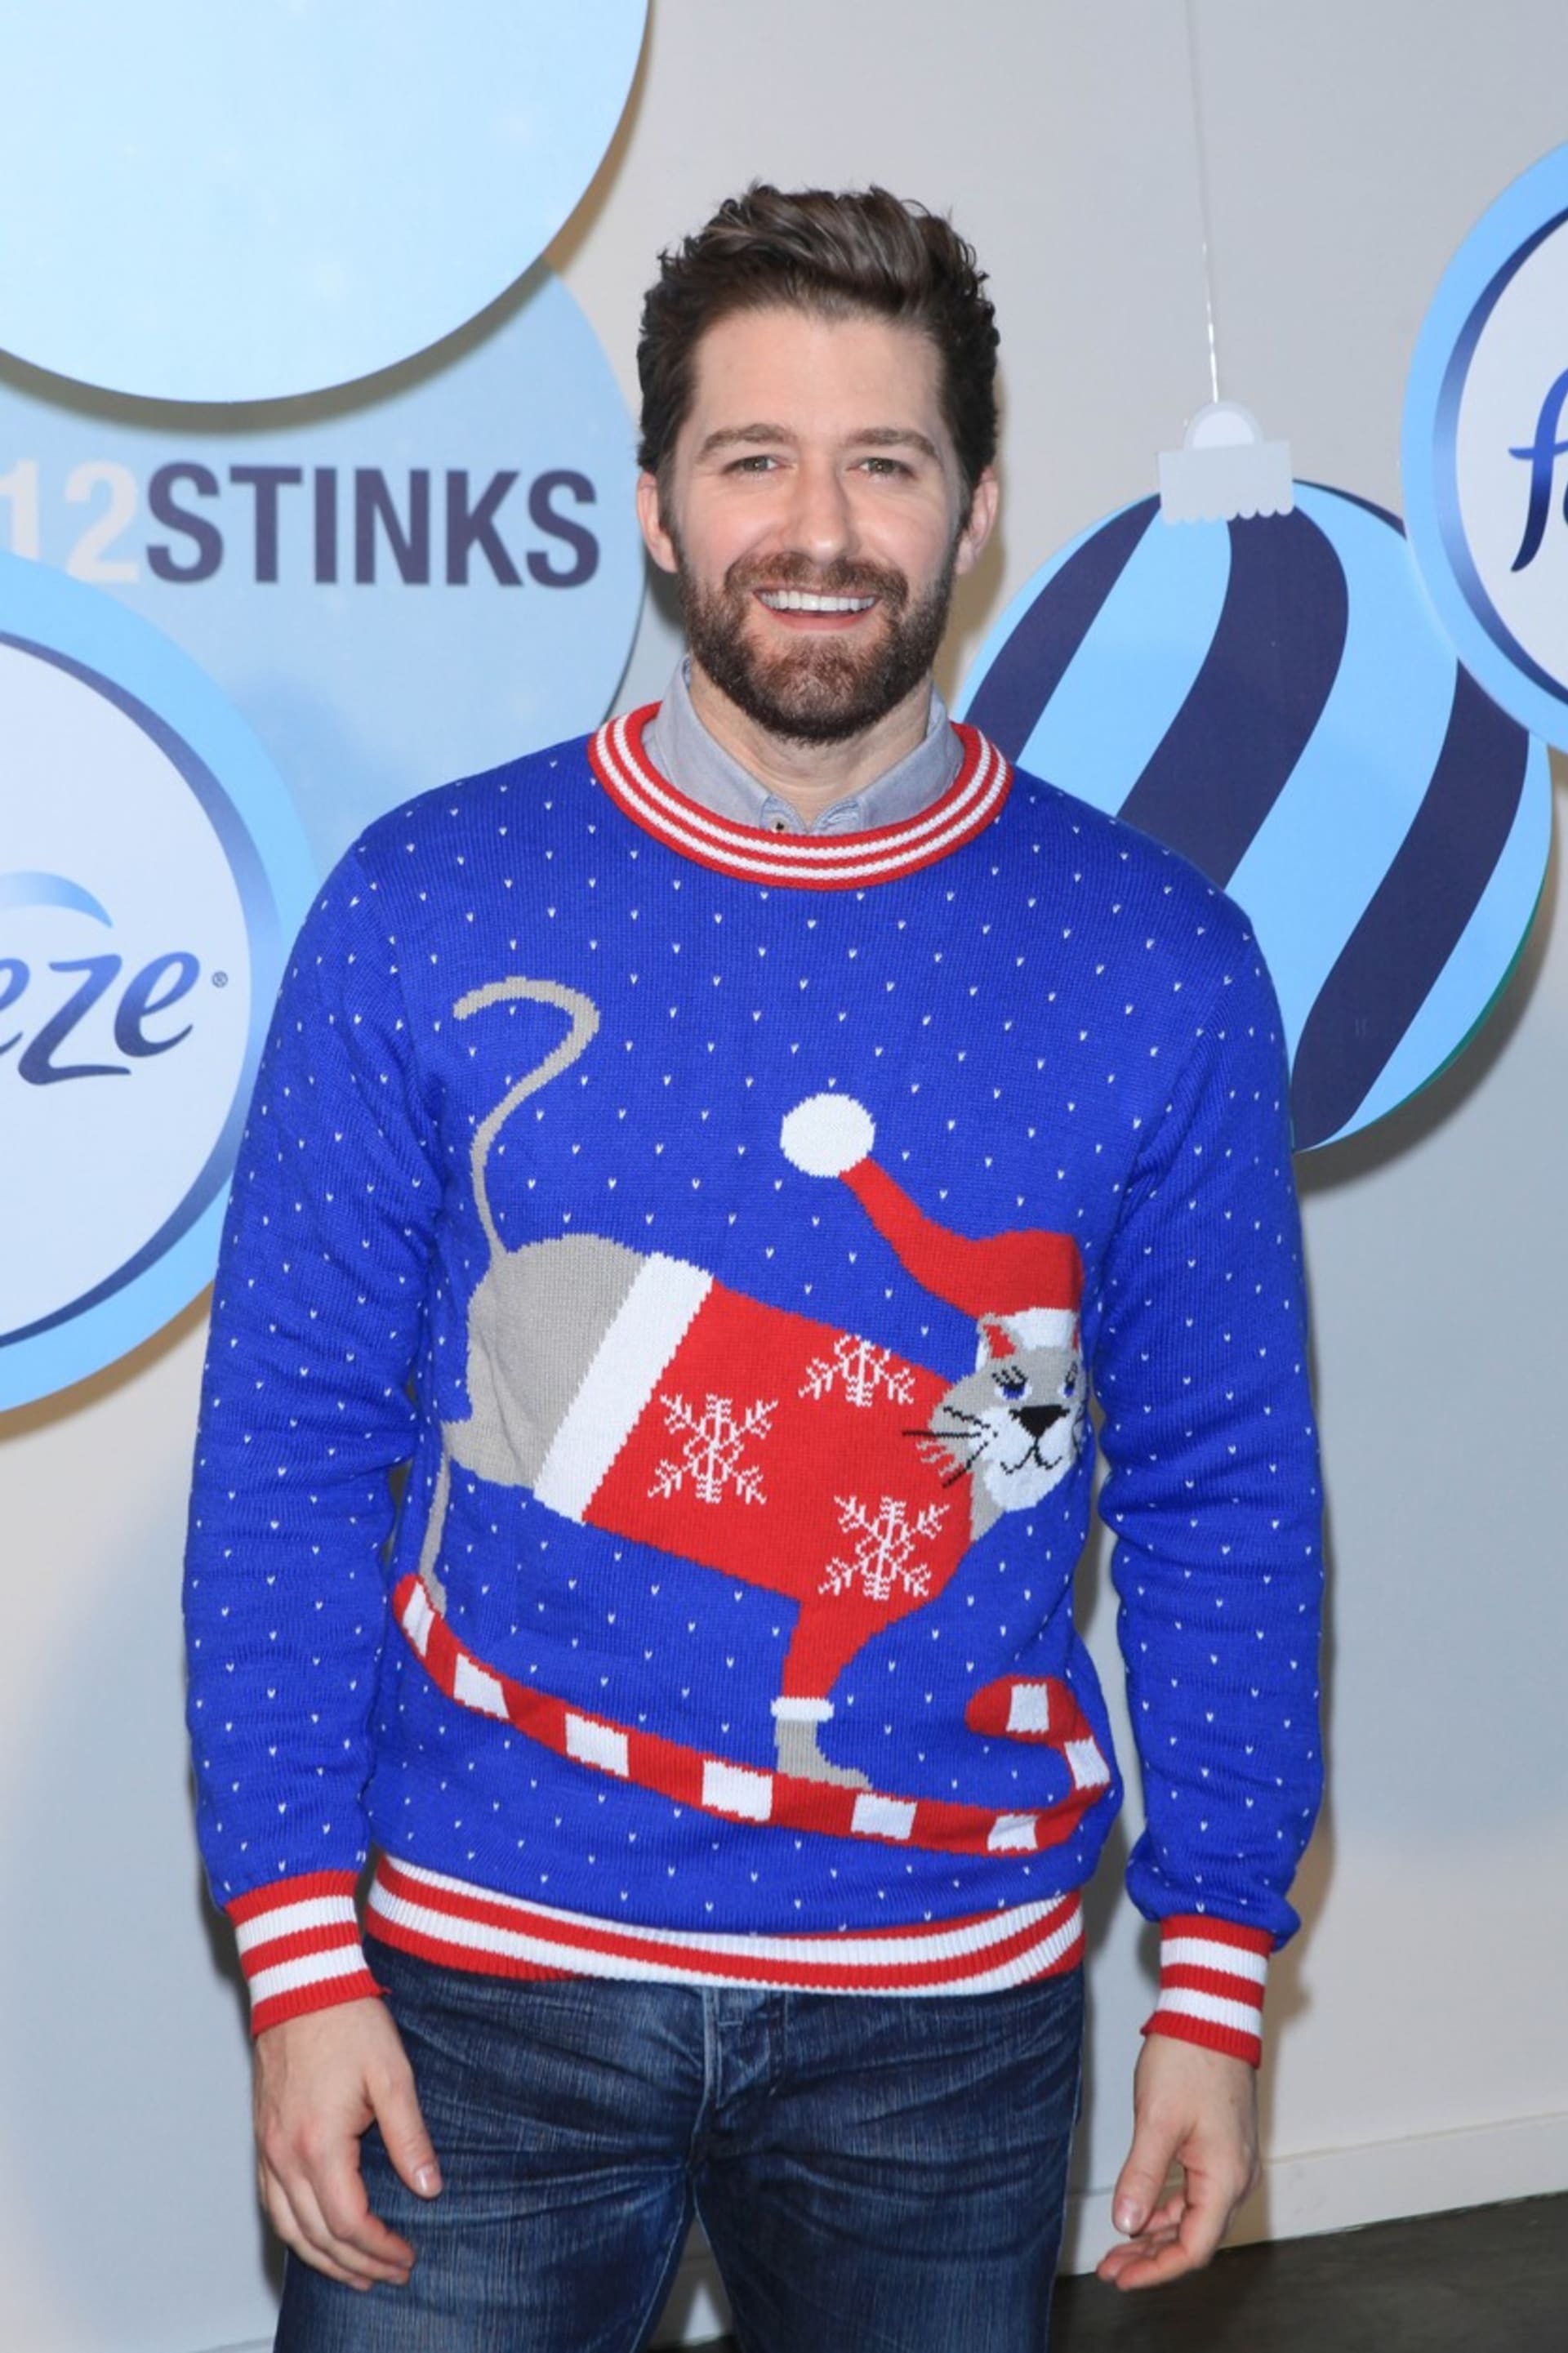 Herec Matthew Morrison známý ze seriálu Glee má pro tyto svetry také slabost.